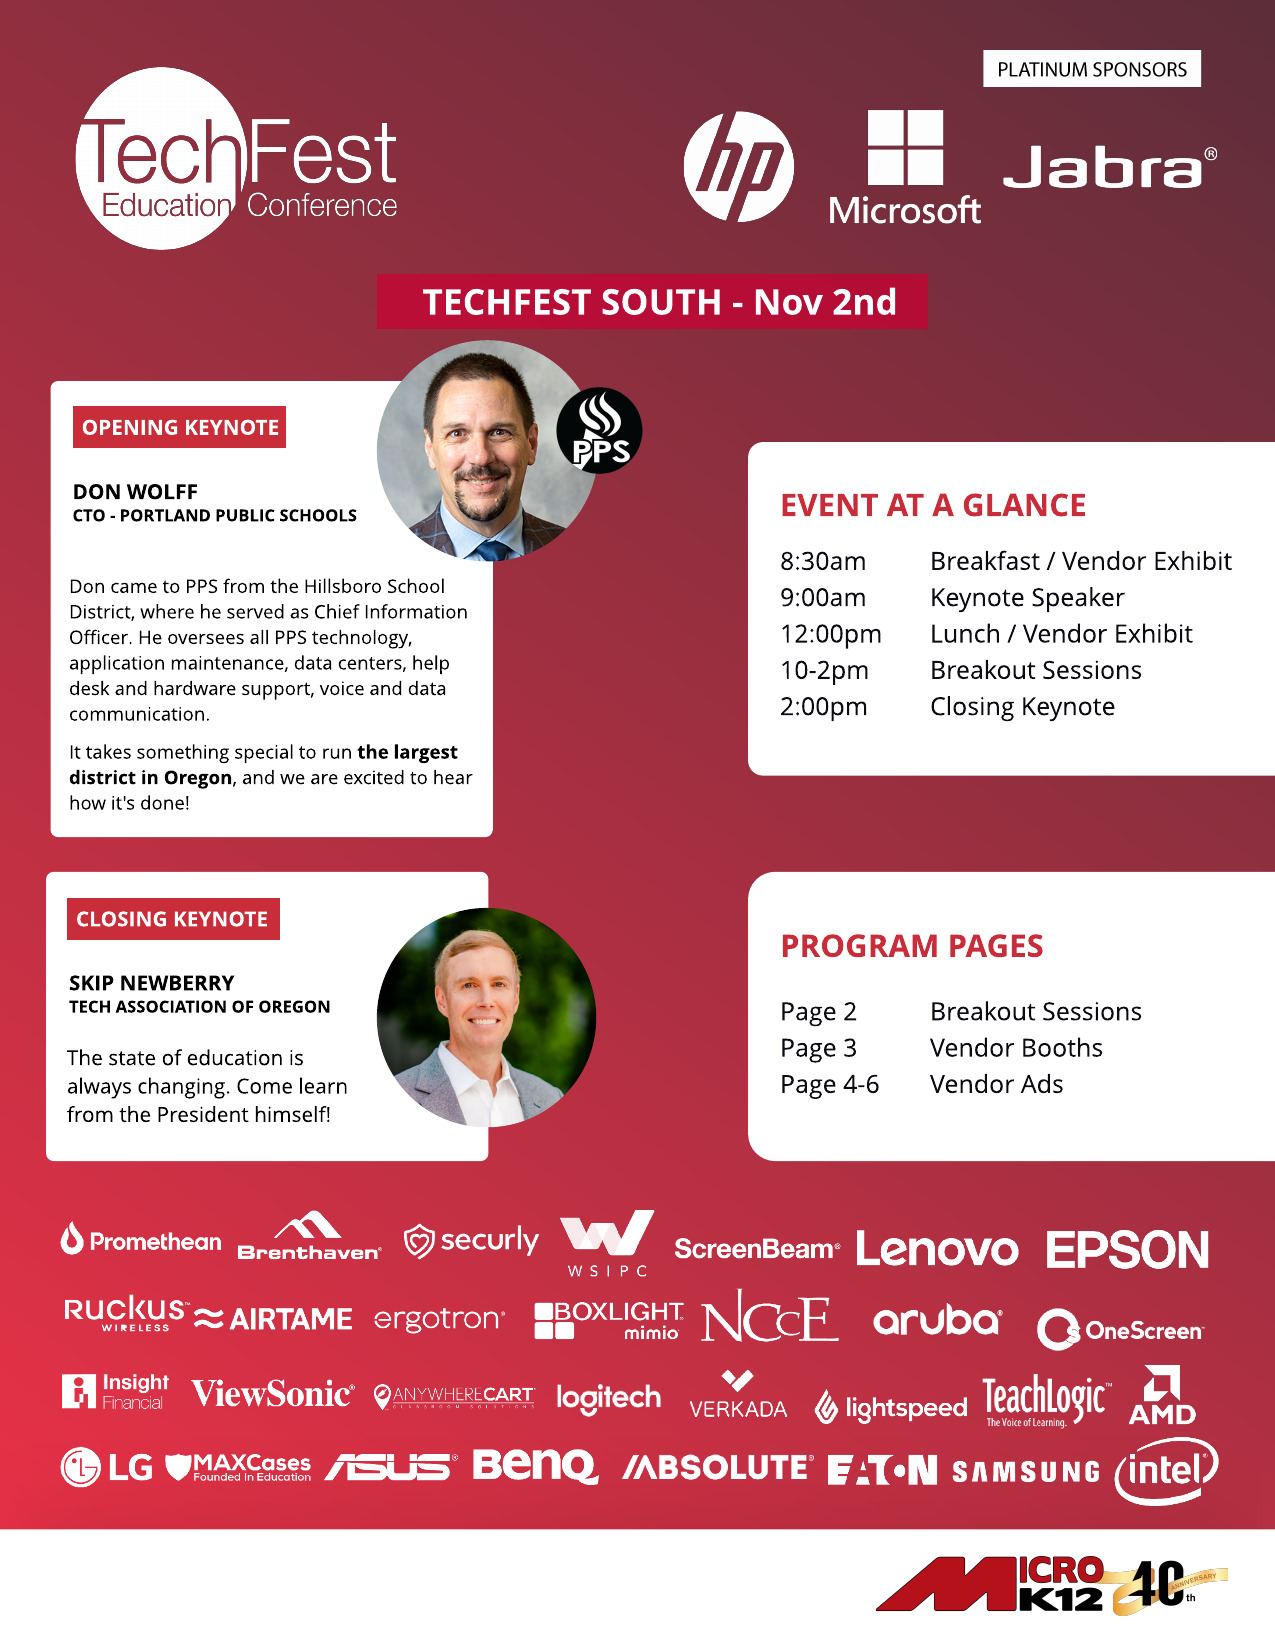 TechFest South - Agenda Keynotes